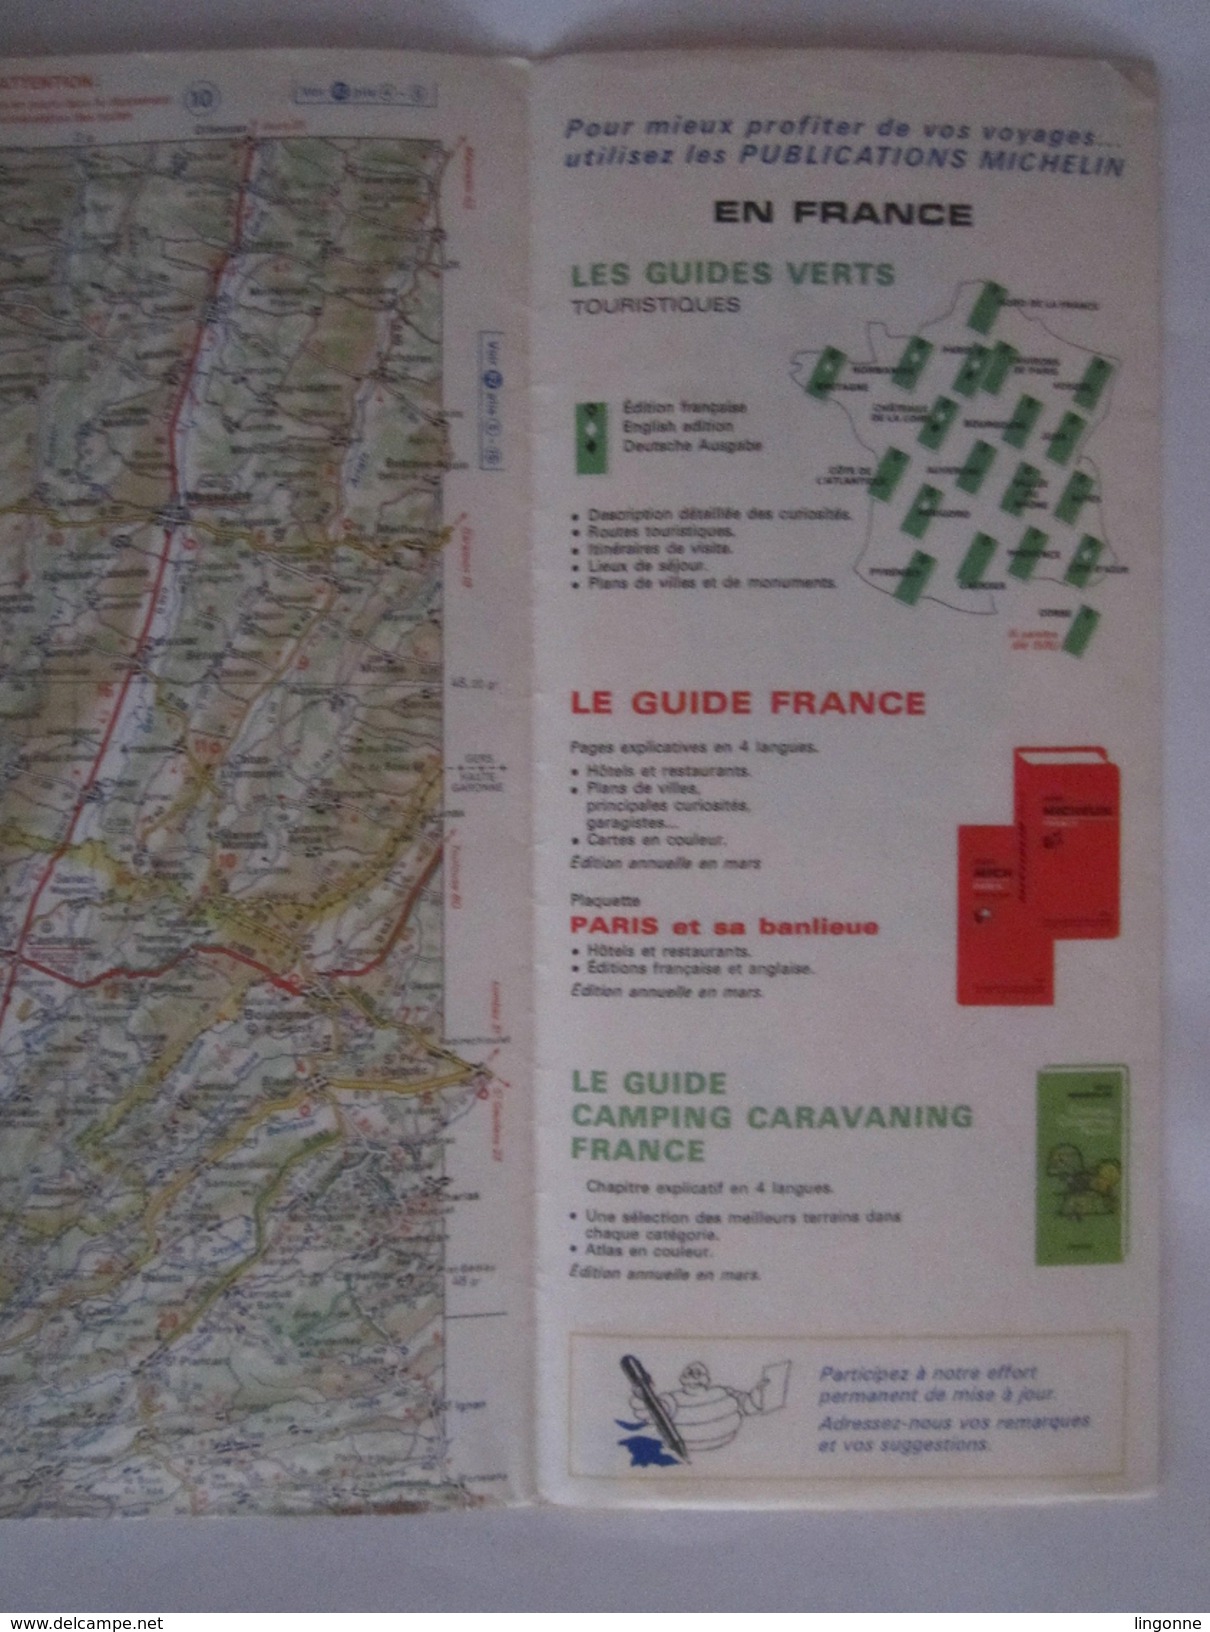 Carte Routière MICHELIN - N° 85 - Année 1976 - BIARRITZ - LUCHON - Cartes Routières